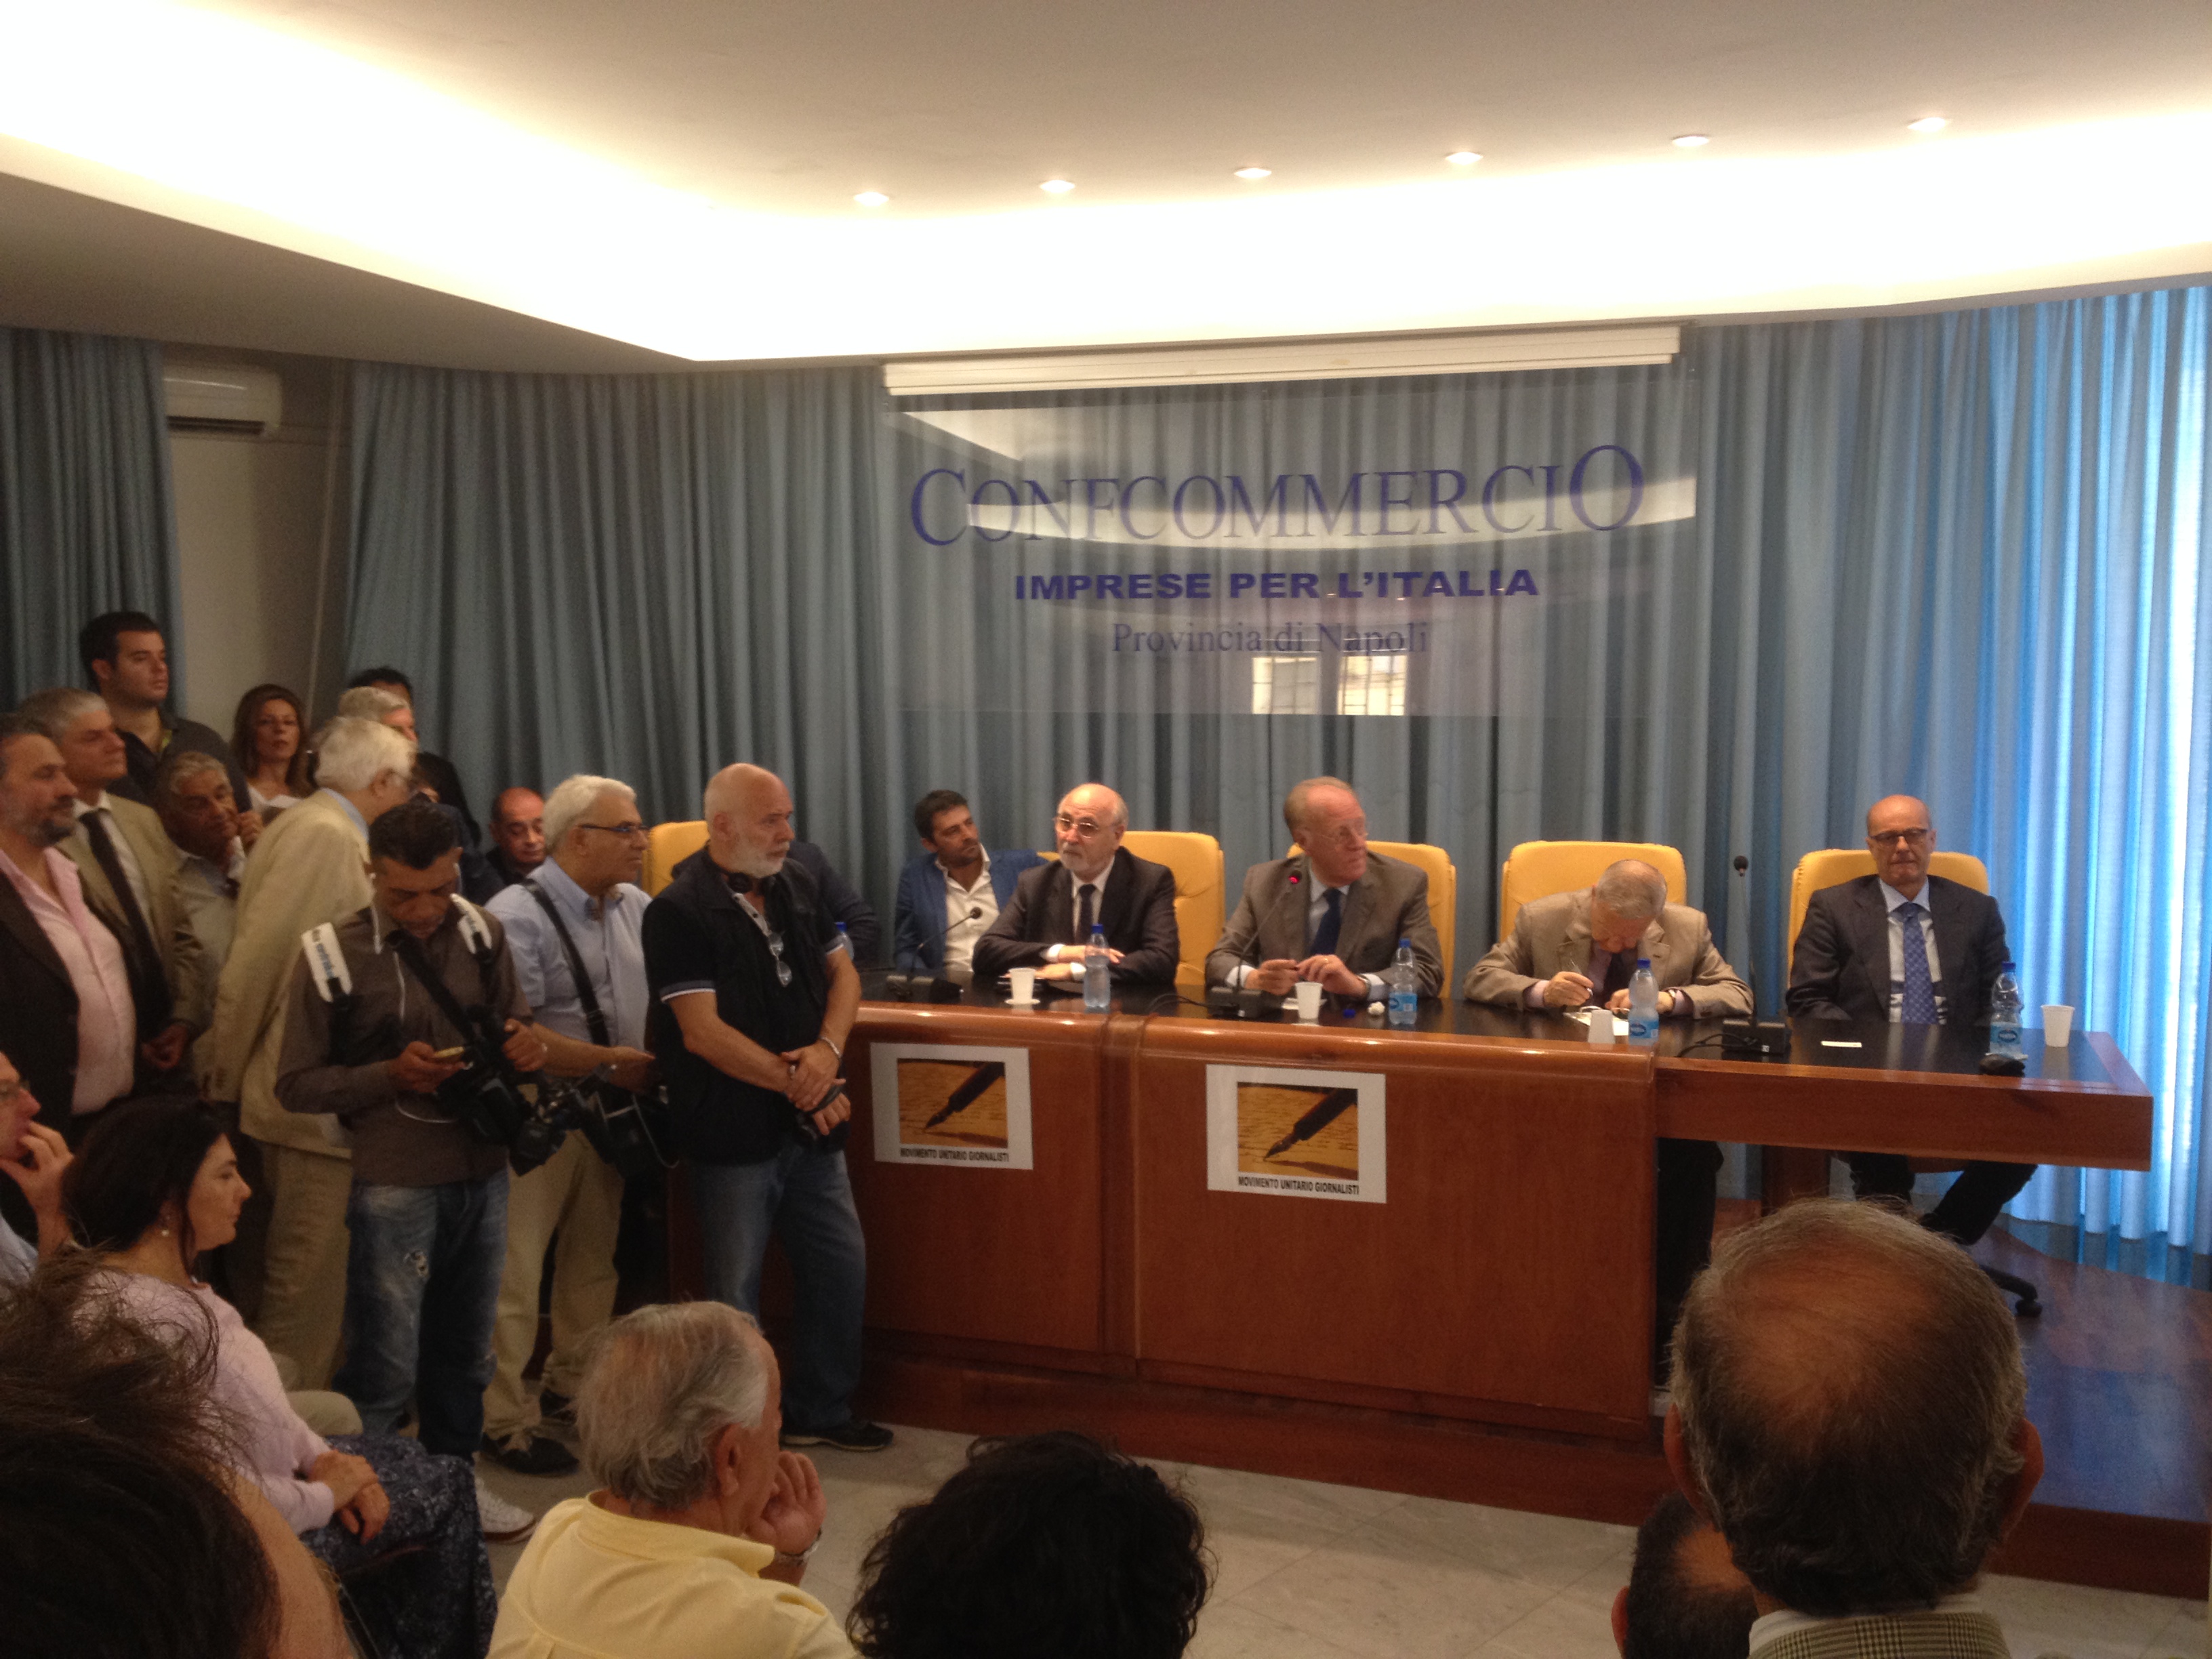  Presentato a Napoli il Movimento Unitario Giornalisti